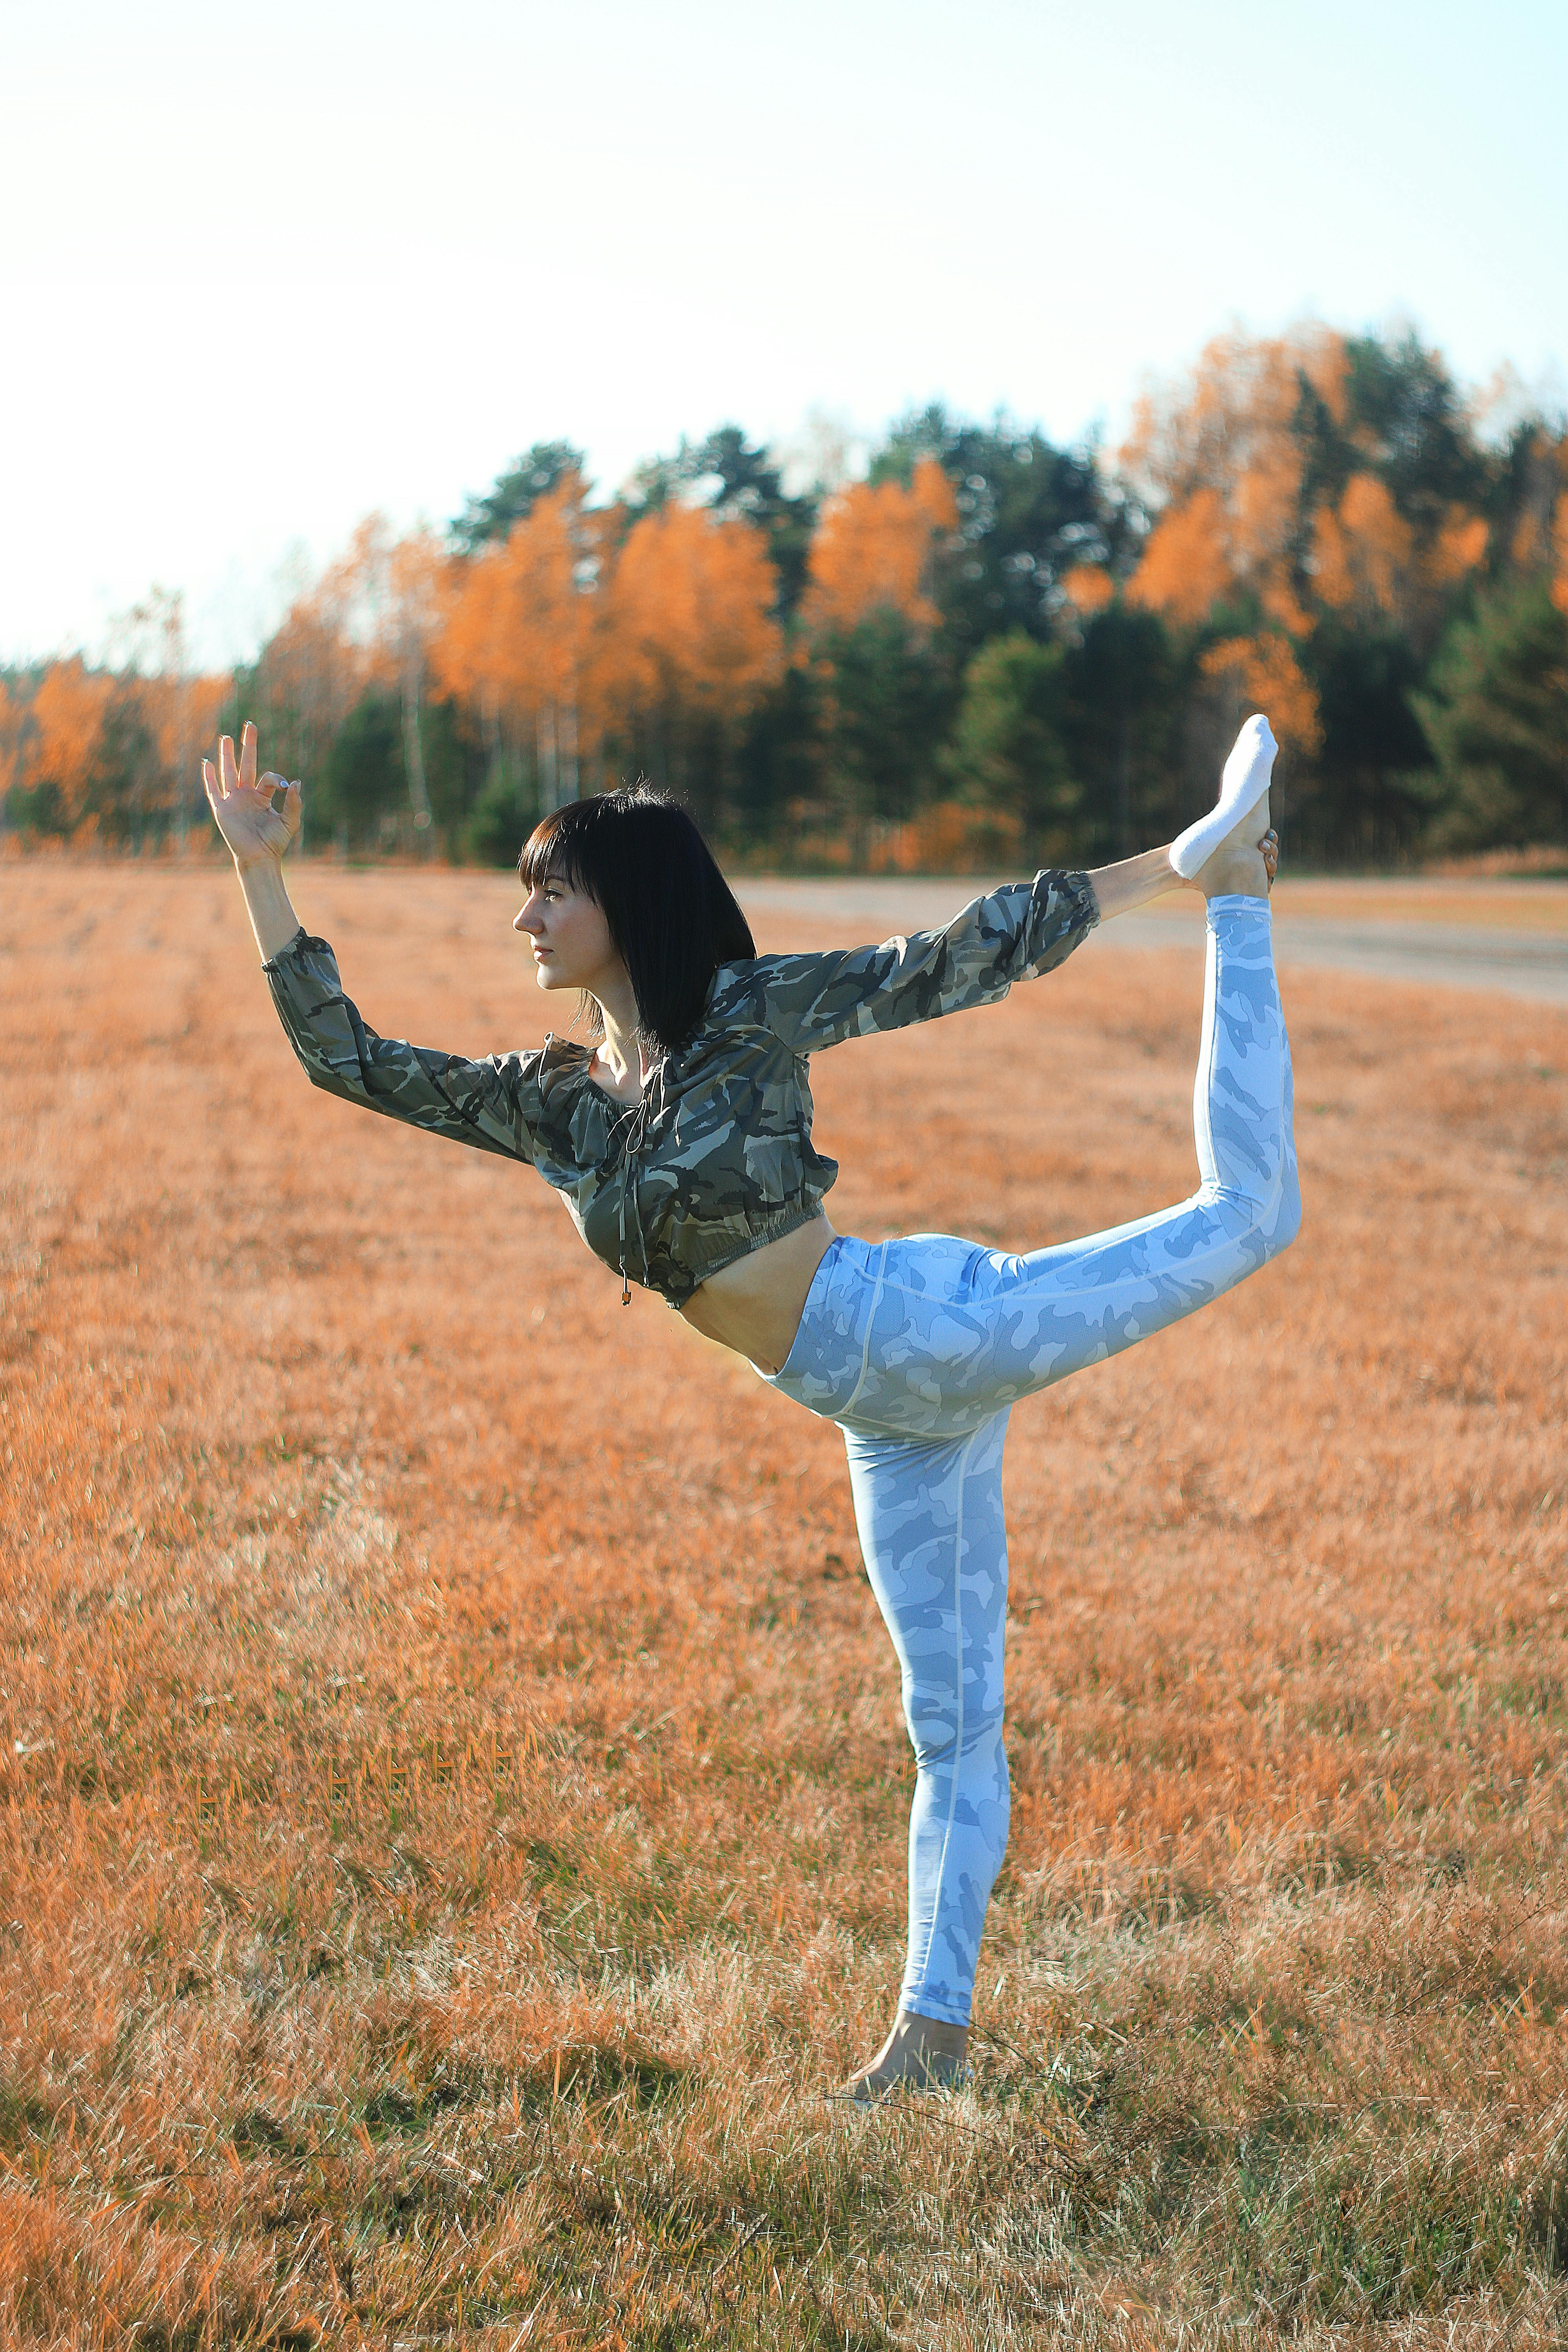 Apto mulher praticando Yoga imagem vetorial de stockgiu© 247752022